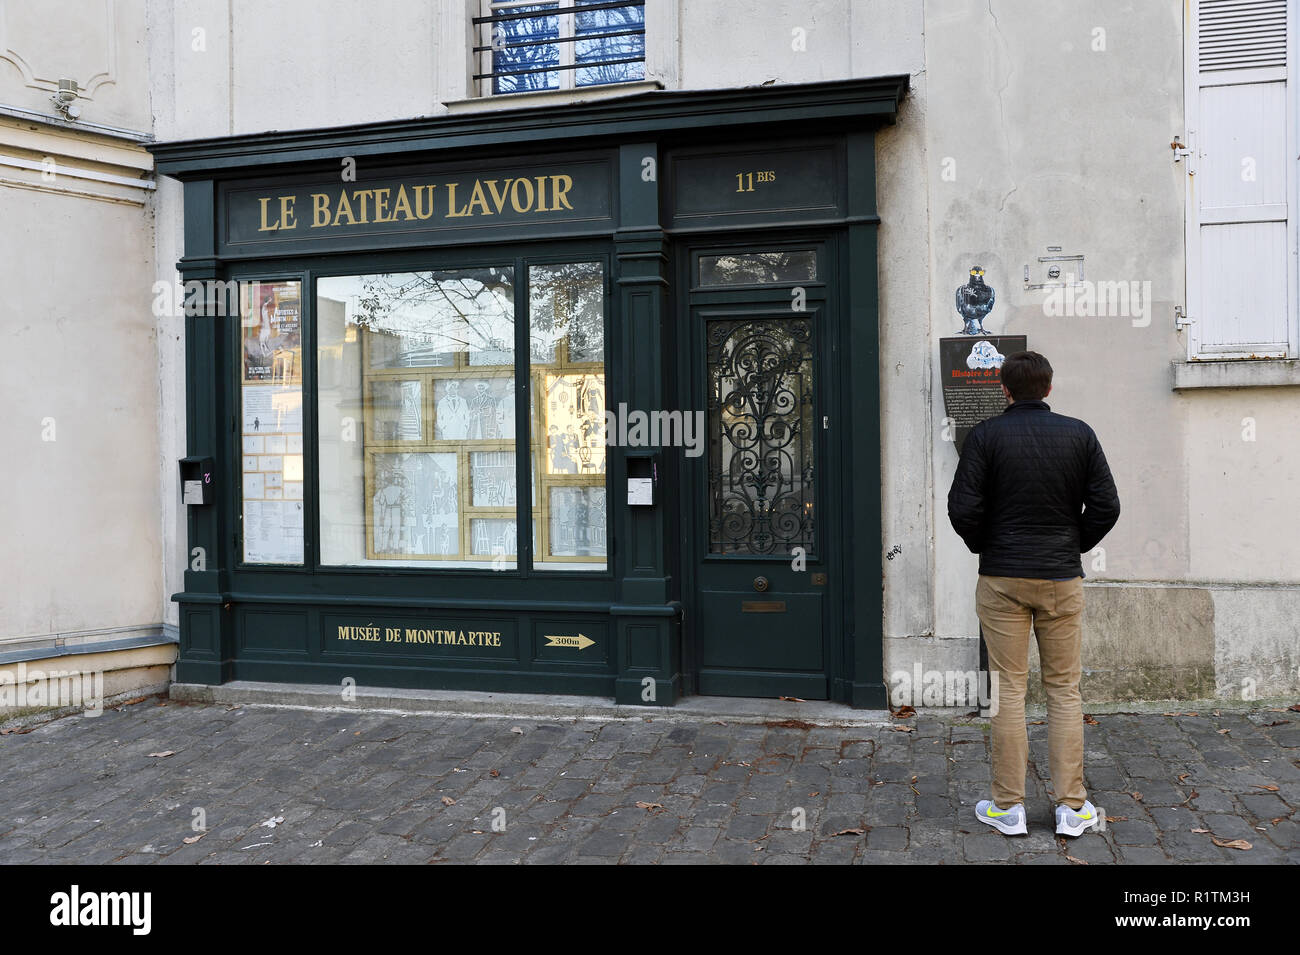 Le Bateau Lavoir - Montmartre - Paris - France Banque D'Images